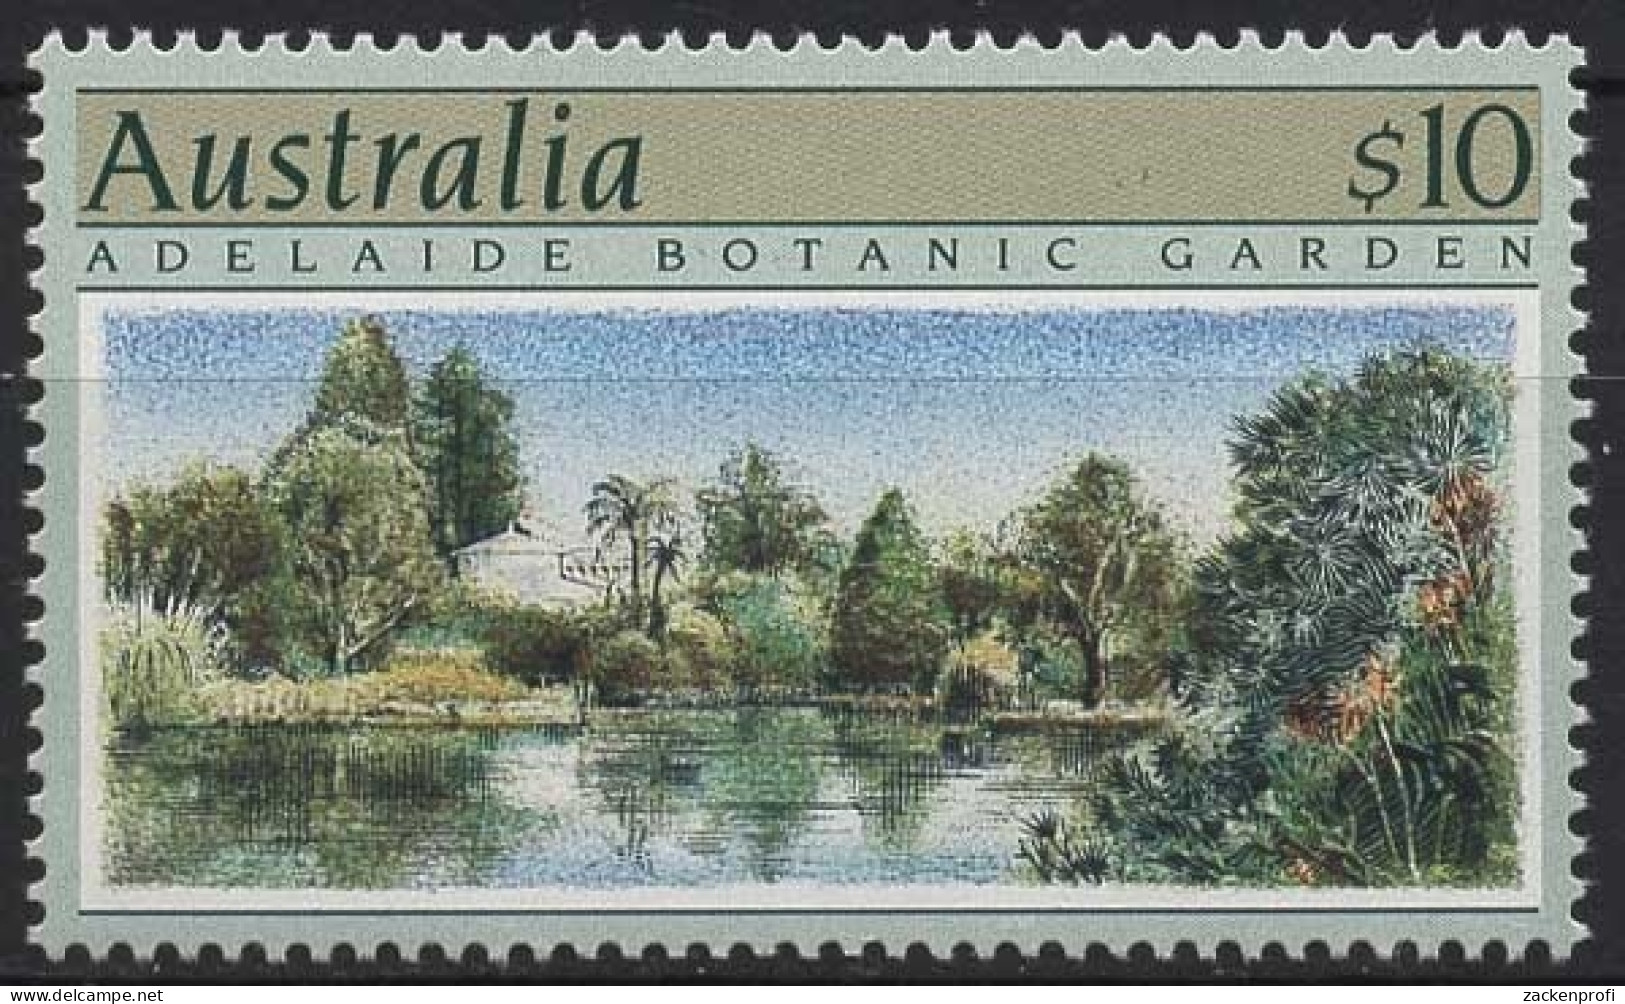 Australien 1989 Gartenanlagen 1150 Postfrisch - Nuevos